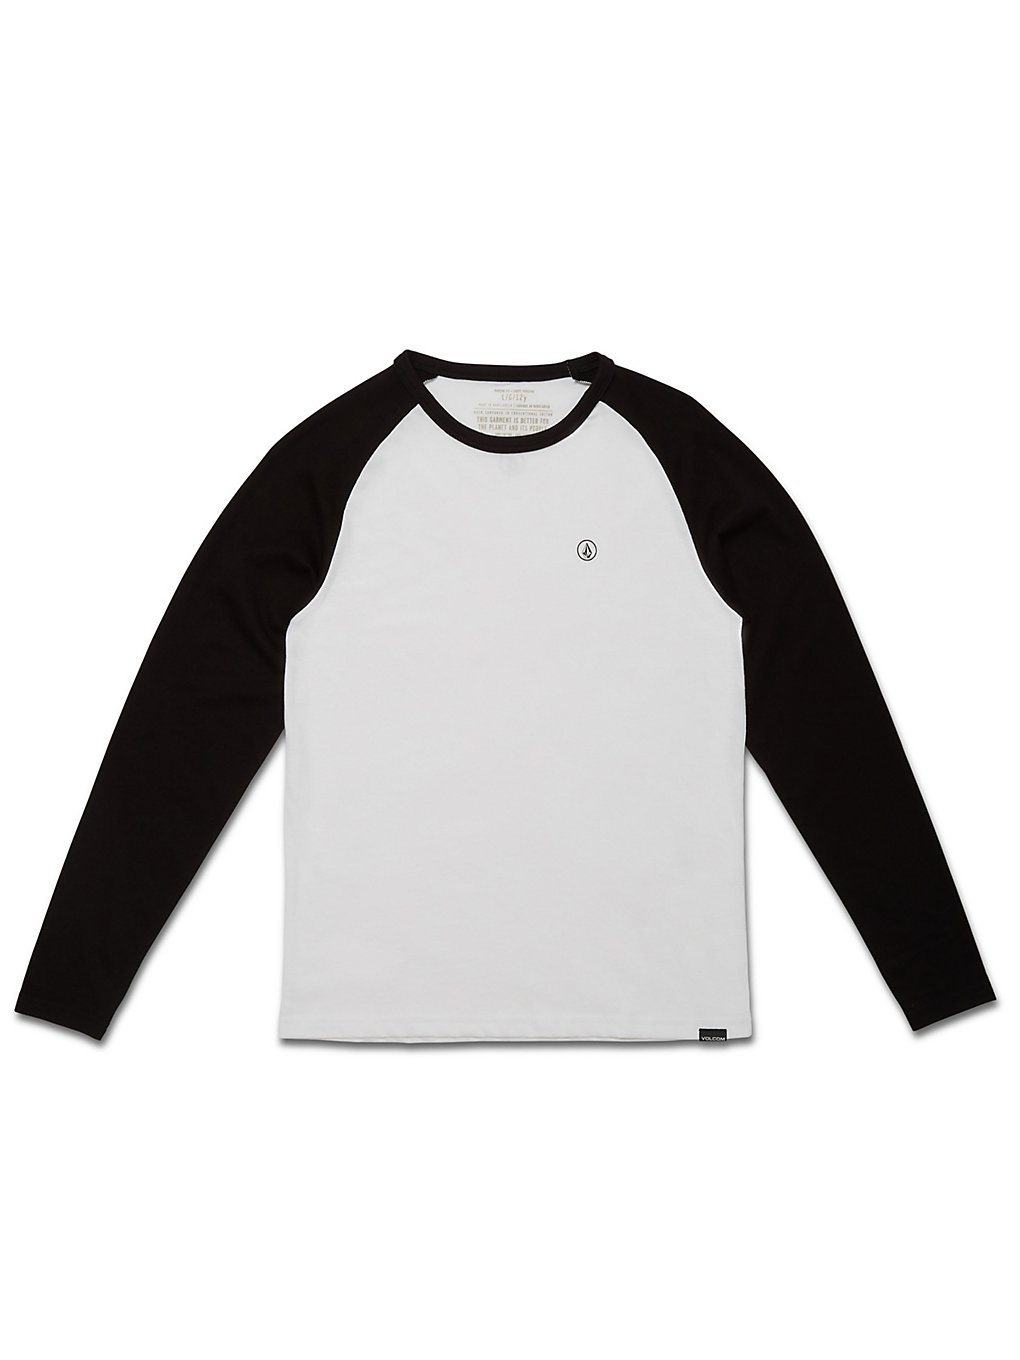 Volcom Pen Basic Longsleeve T-Shirt black